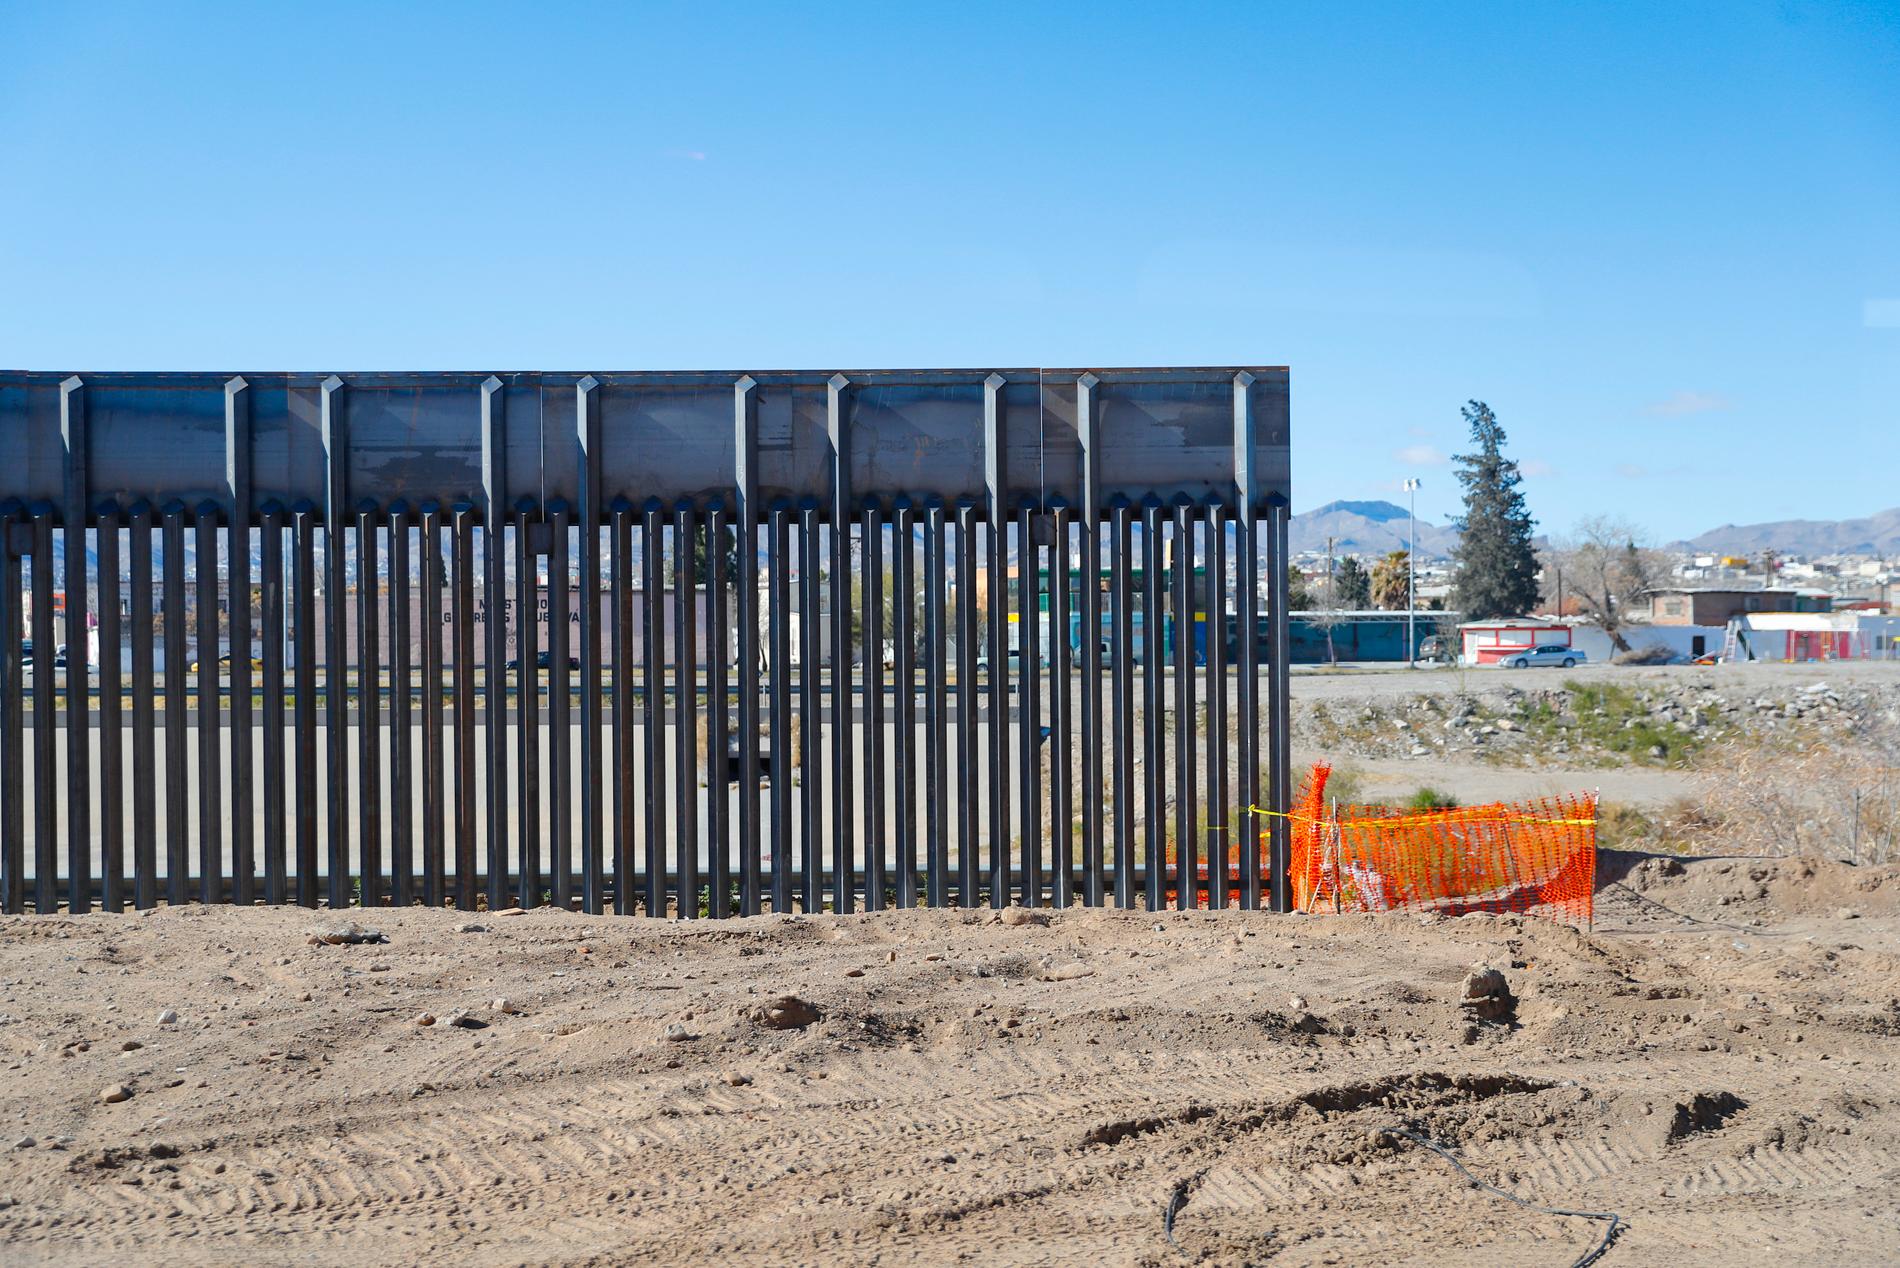 En gränsbarriär mot Mexiko håller på att byggas nära staden El Paso i Texas i USA.